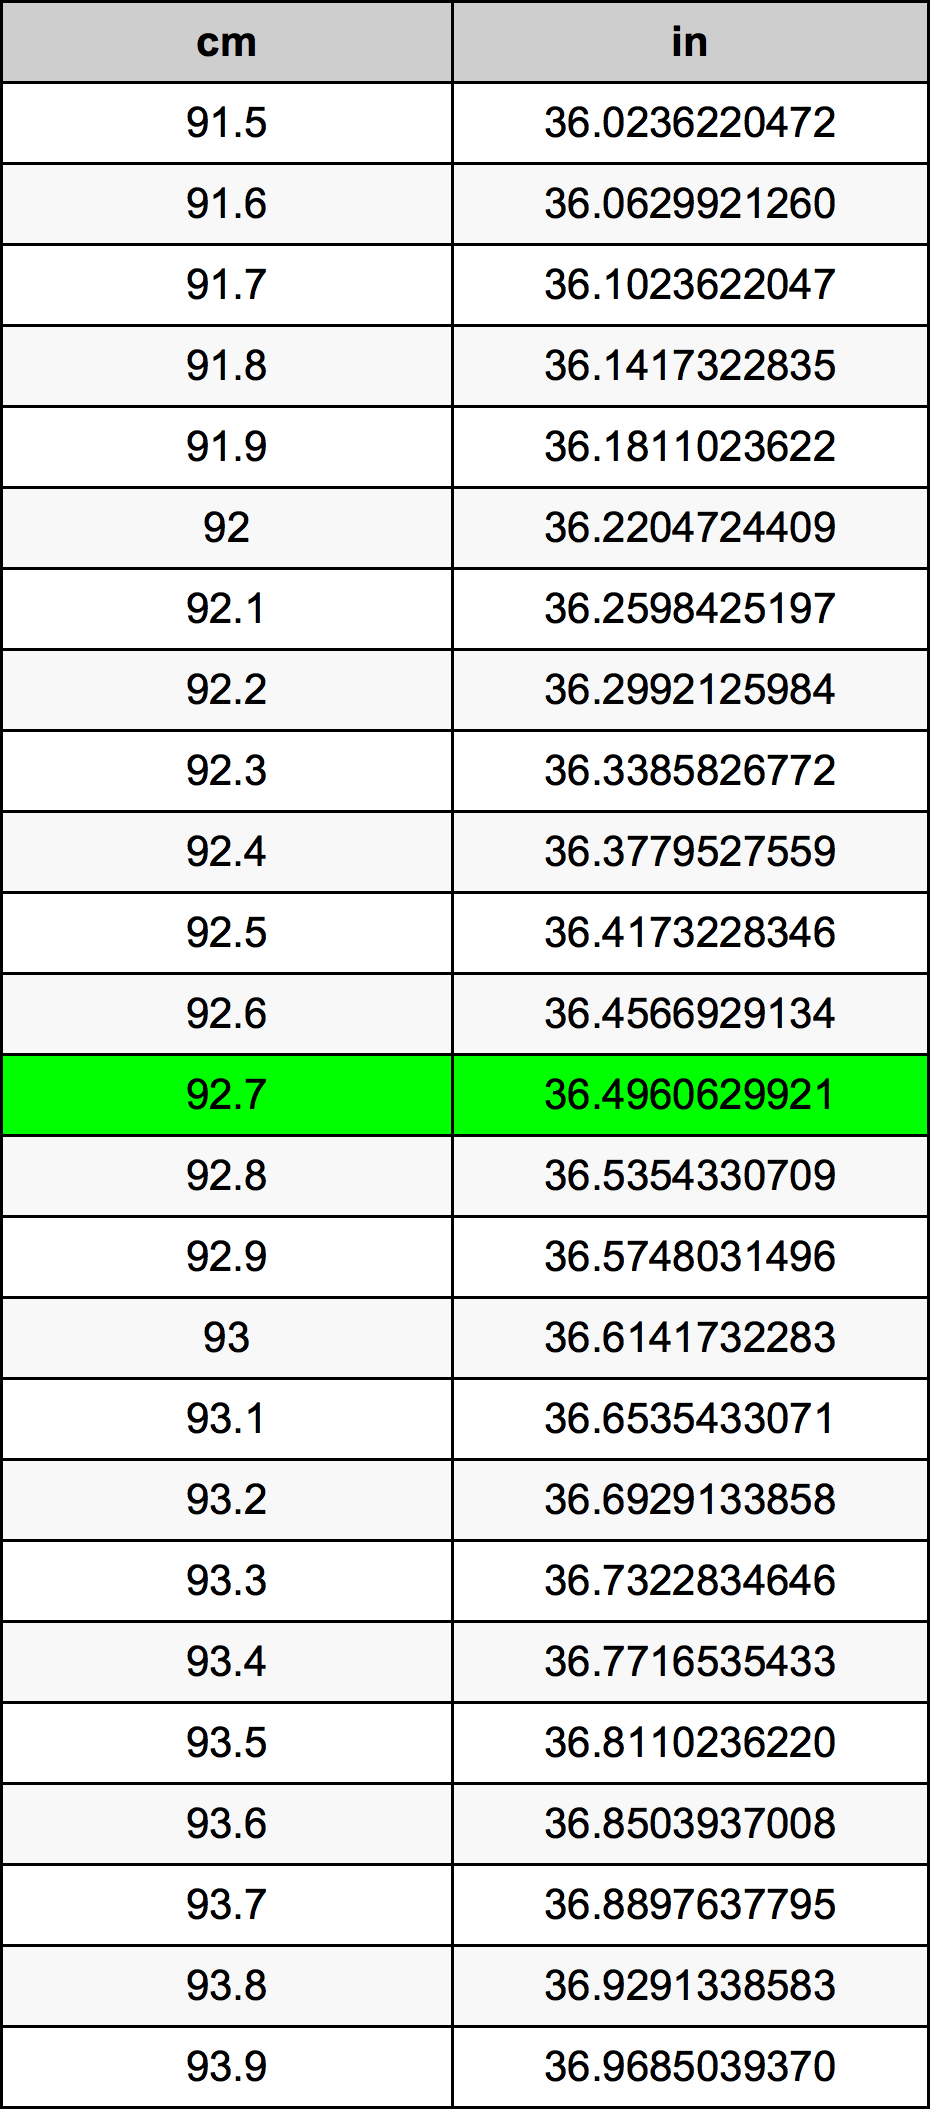 92.7 Centiméter átszámítási táblázat